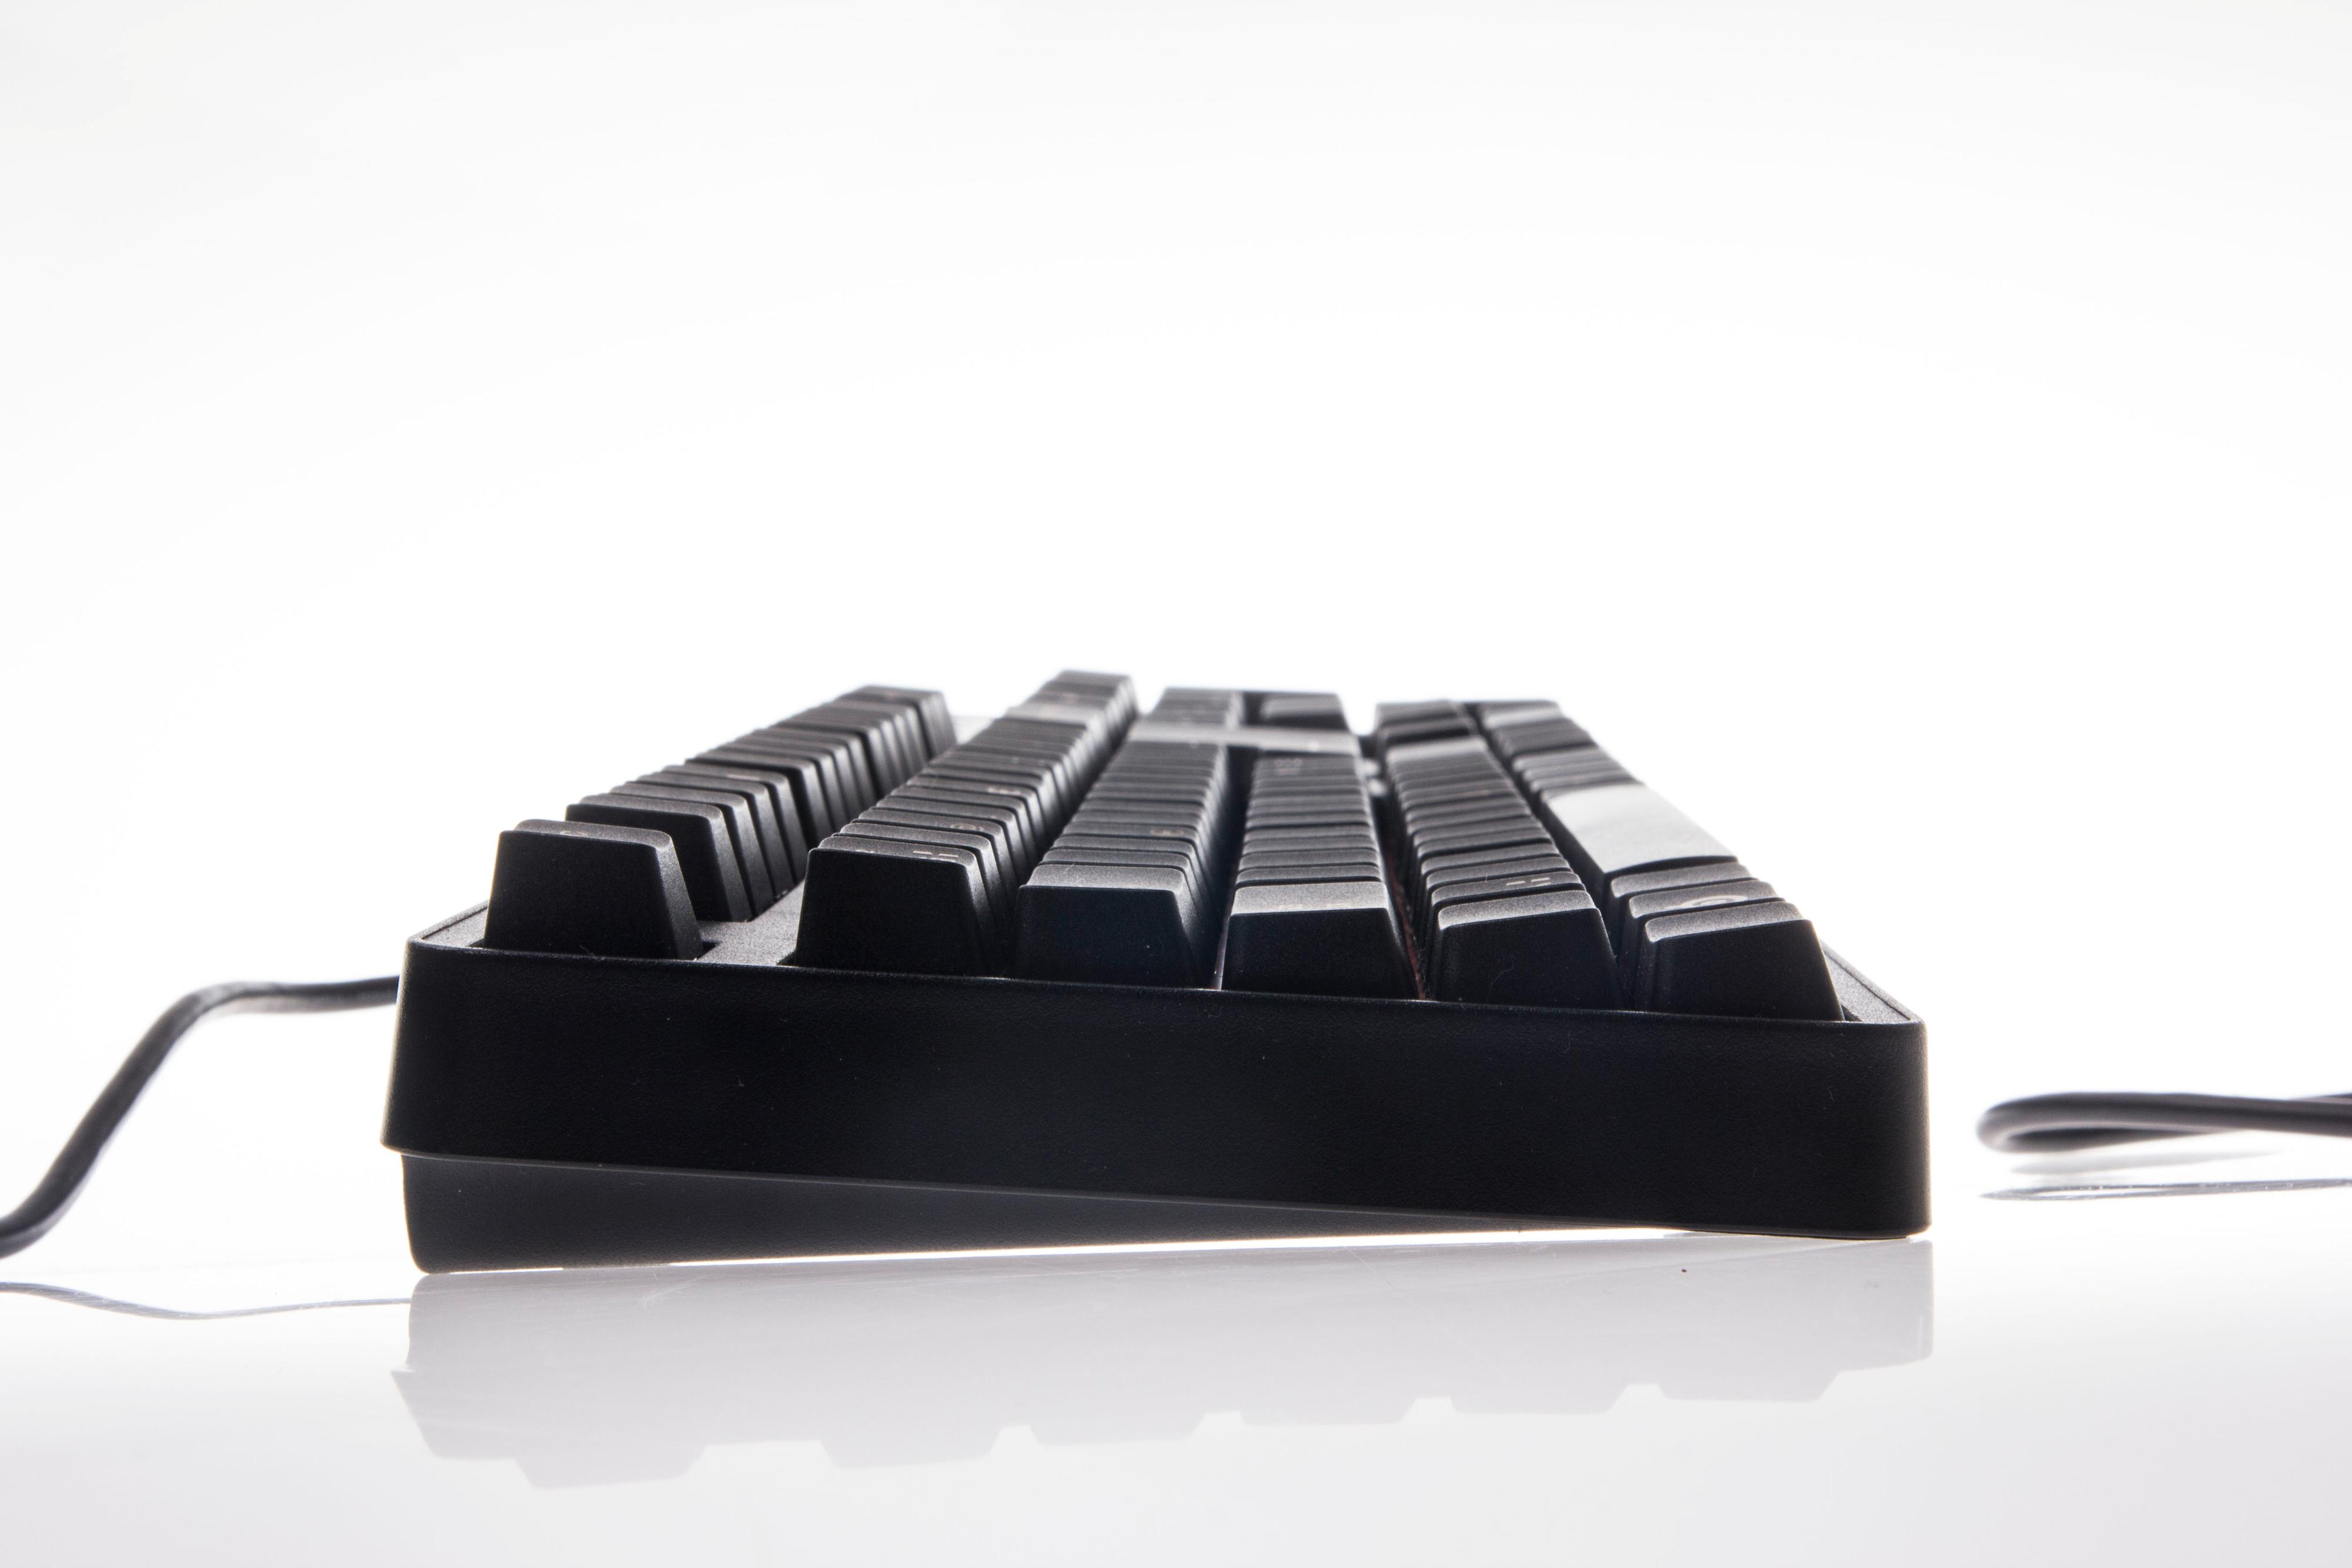 Mekaniske tastaturer er naturlig høyere enn vanlige membran-tastaturer.Foto: Niklas Plikk, Hardware.no